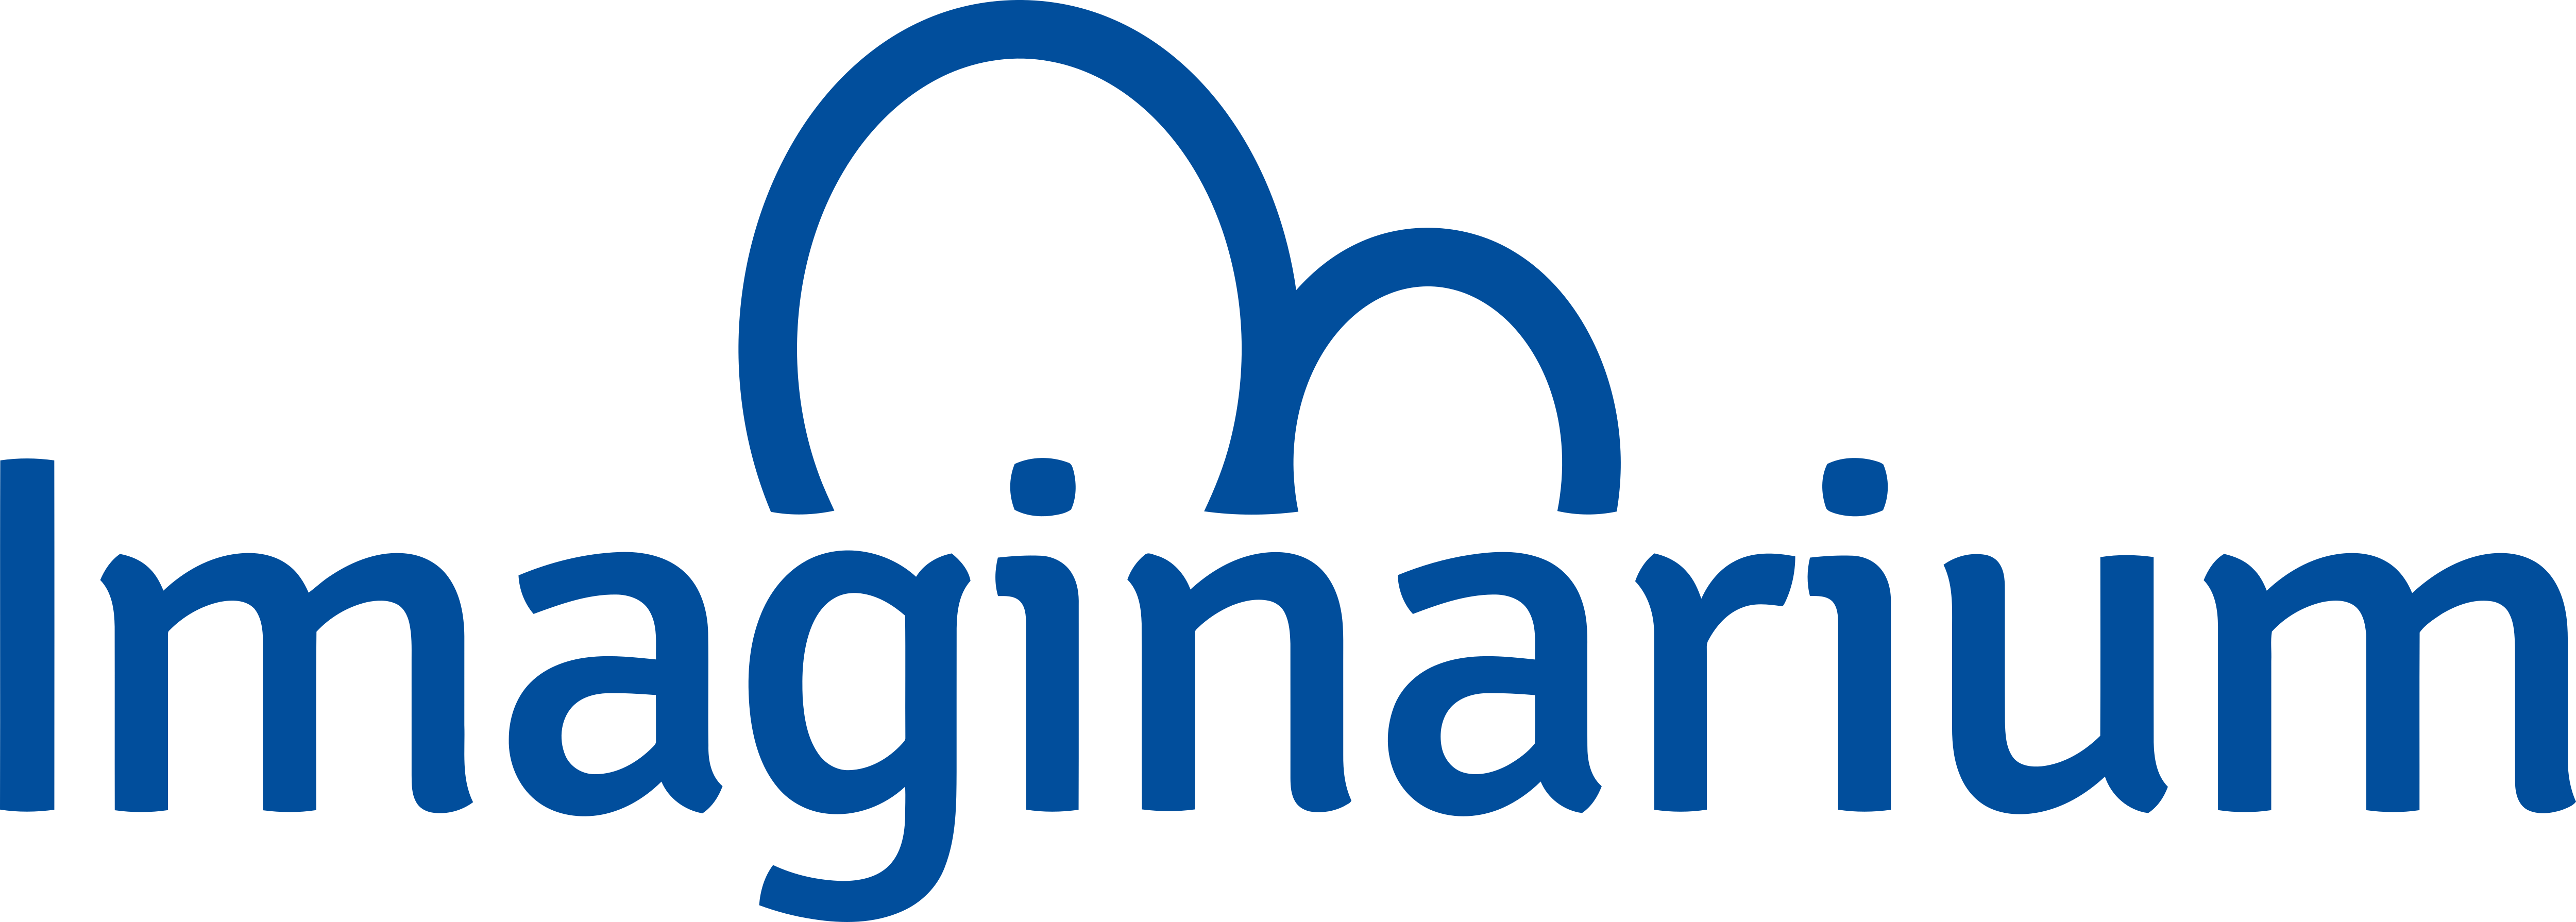 Imaginarium_Logo